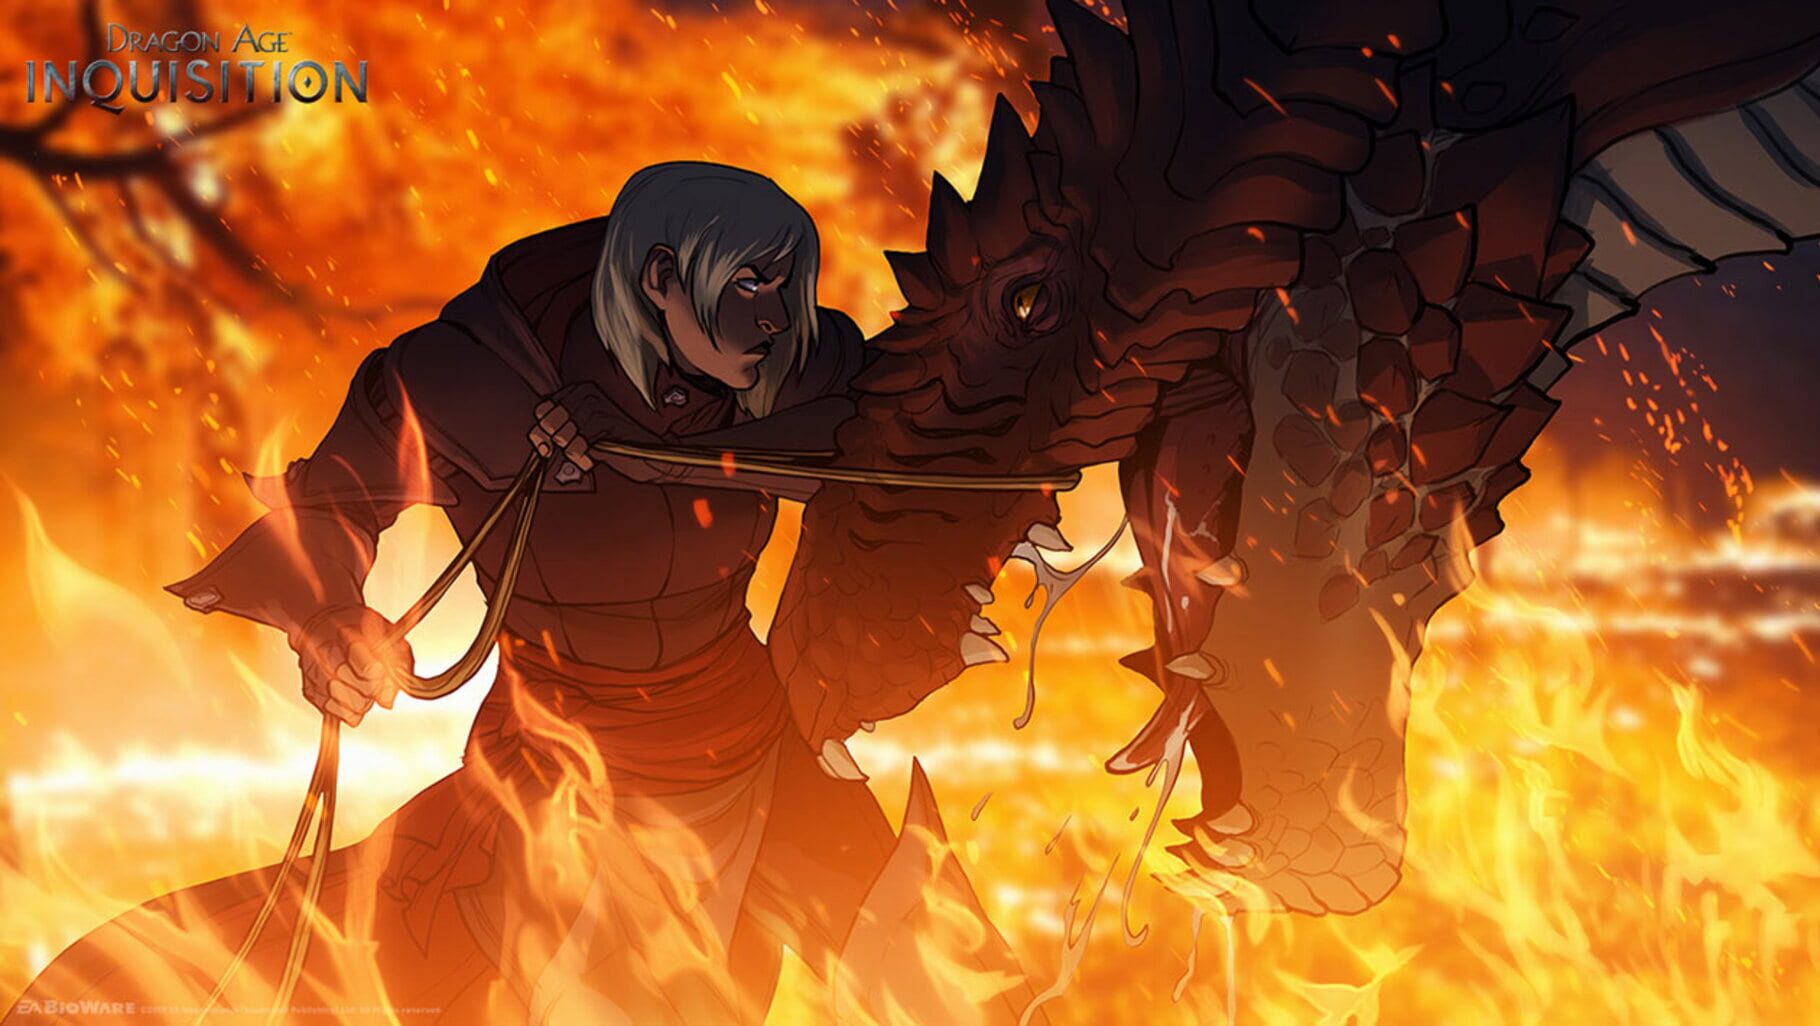 Arte - Dragon Age: Inquisition